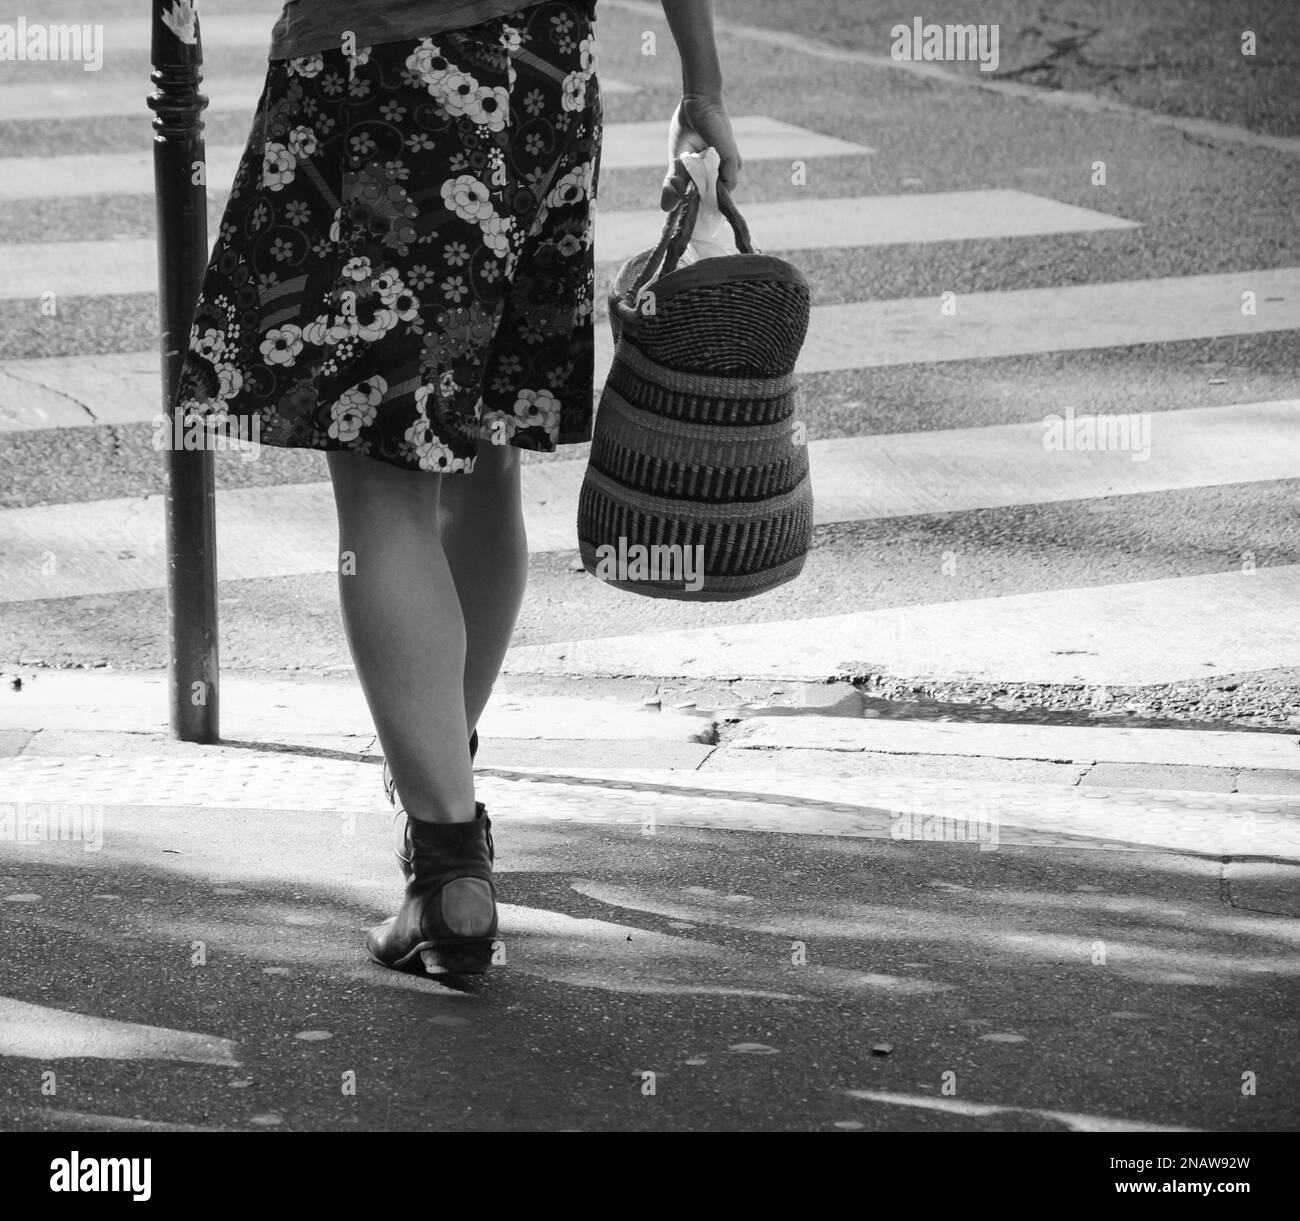 Mujer vistiendo falda floral y con cesta de la compra en mano cruzando calle parisina. París, Francia. Estado de ánimo primaveral en el aire. Foto blanco negro Foto de stock